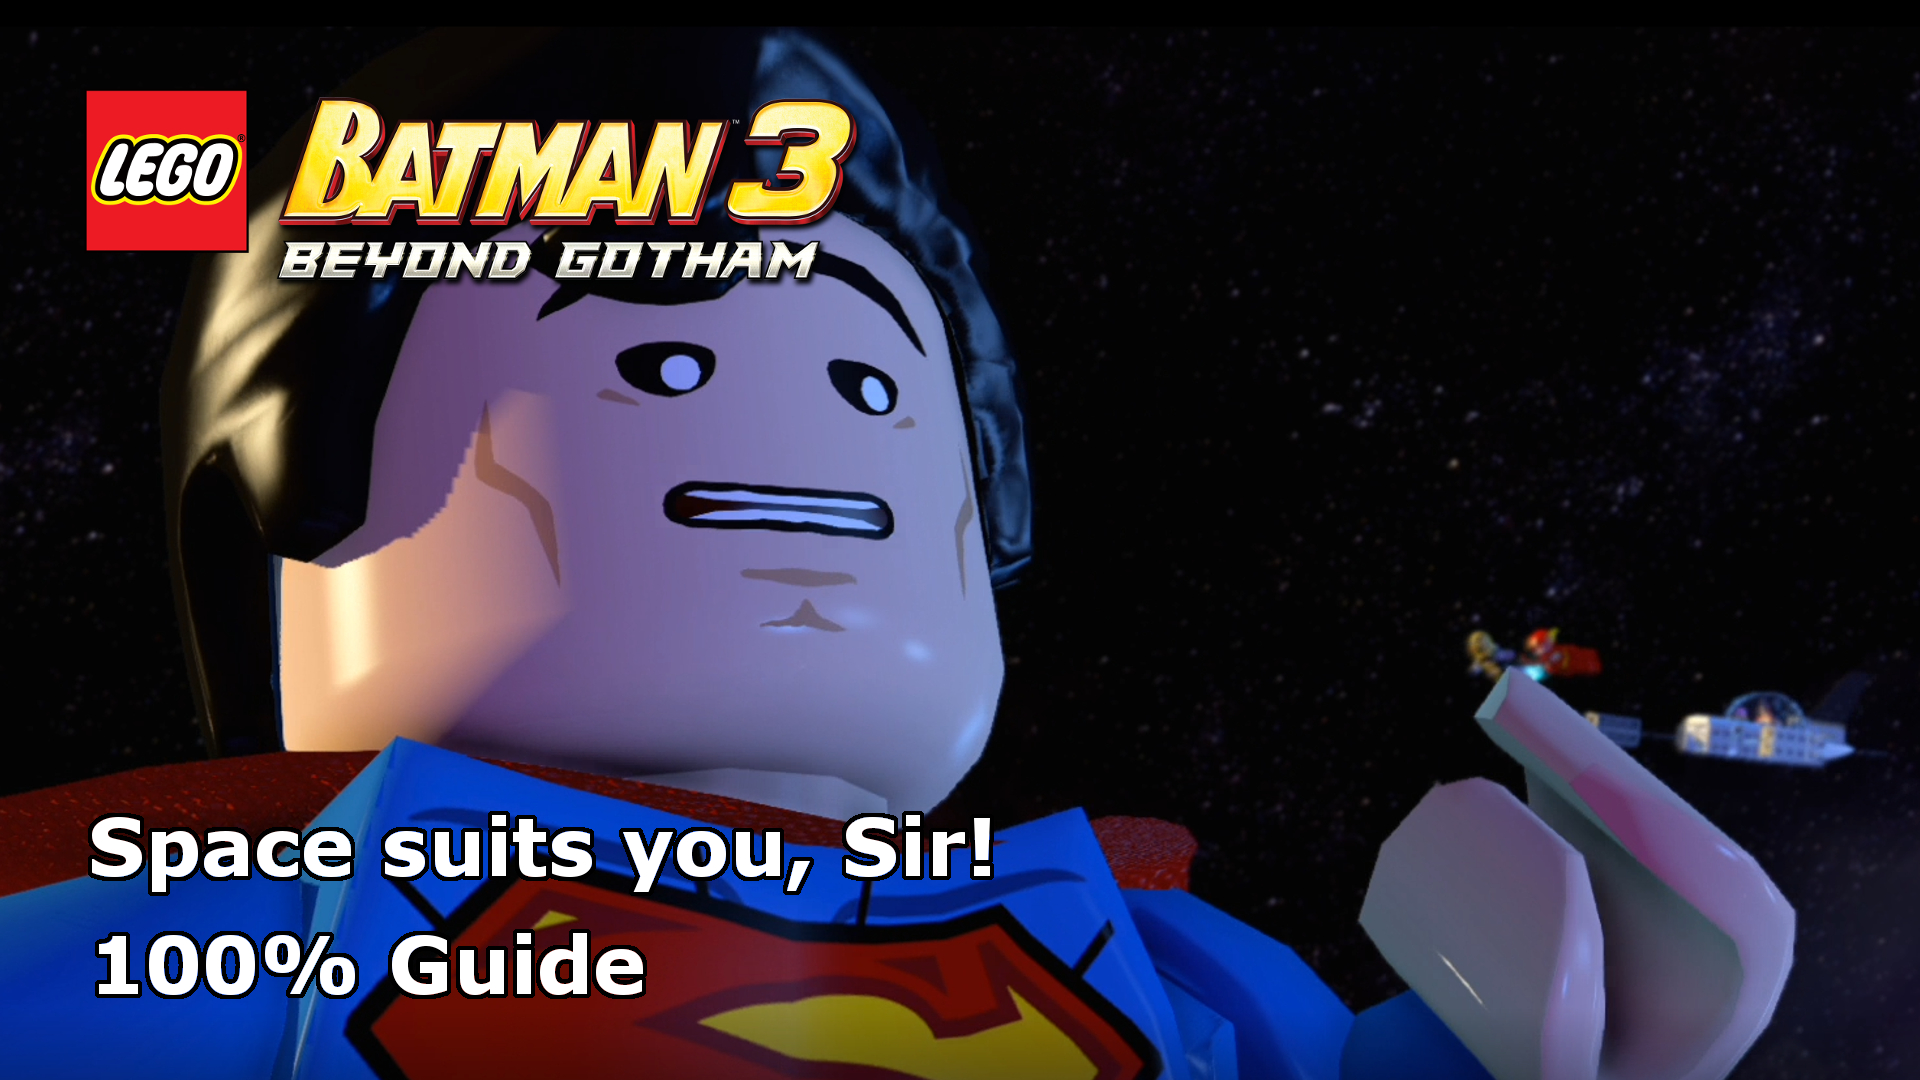 Lego Batman 3: Beyond Gotham – Space suits you, Sir! 